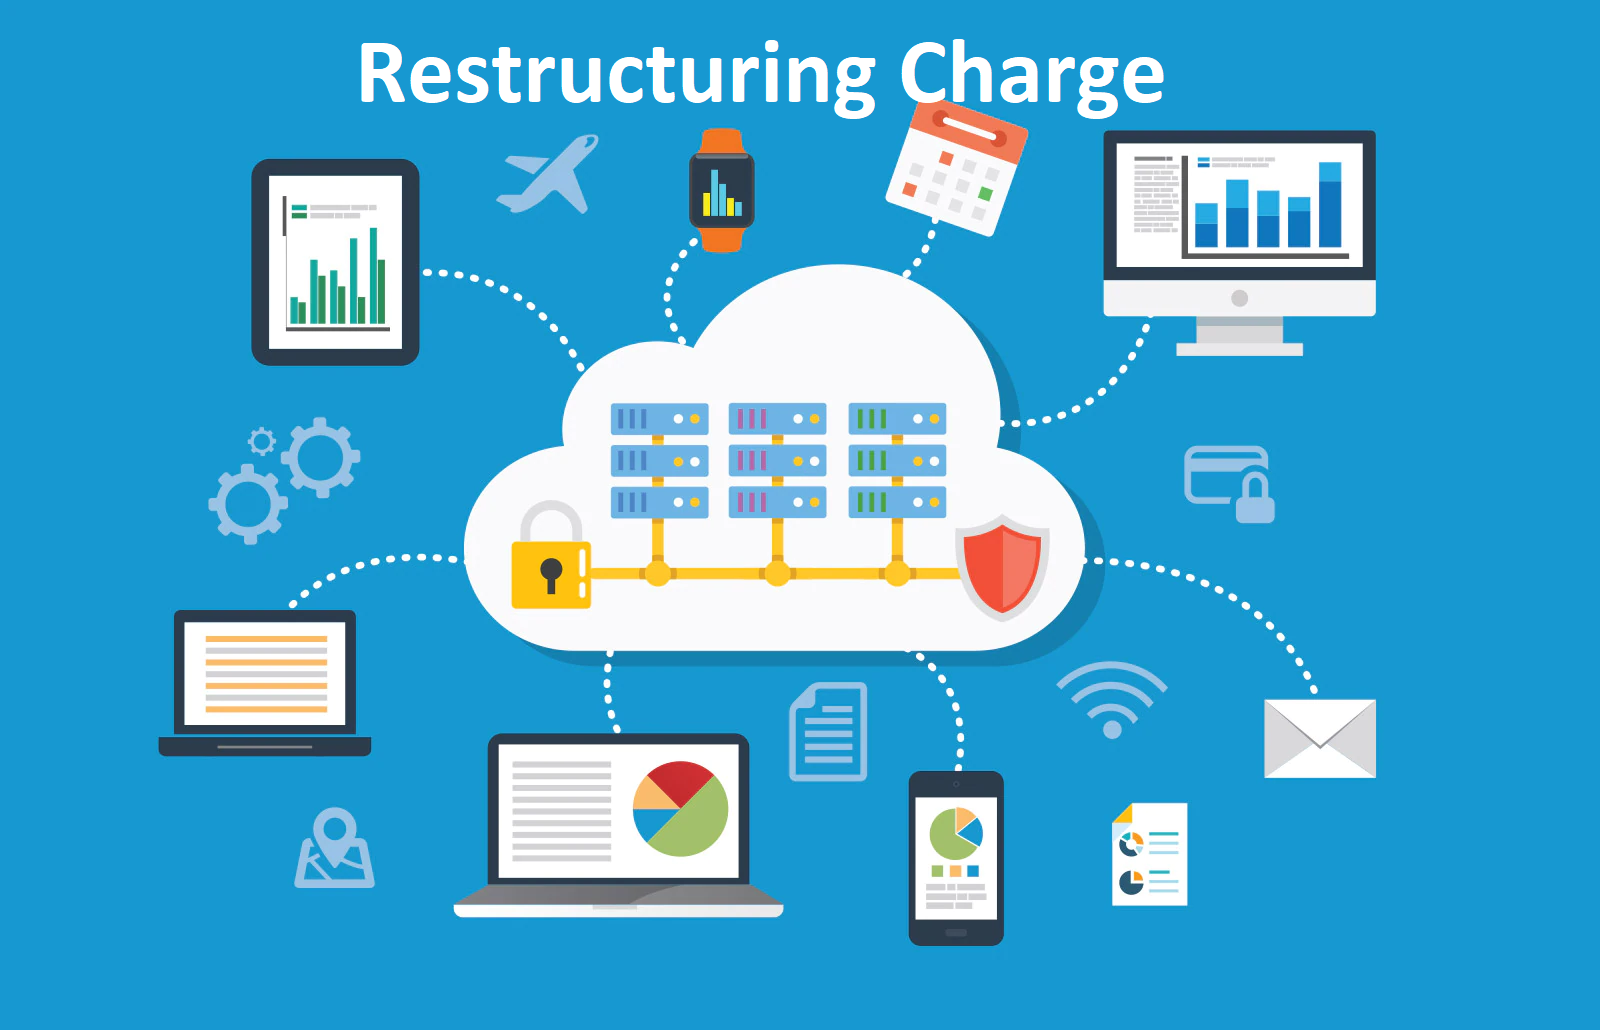 Chi phí tái cấu trúc (Restructuring Charge) là gì?